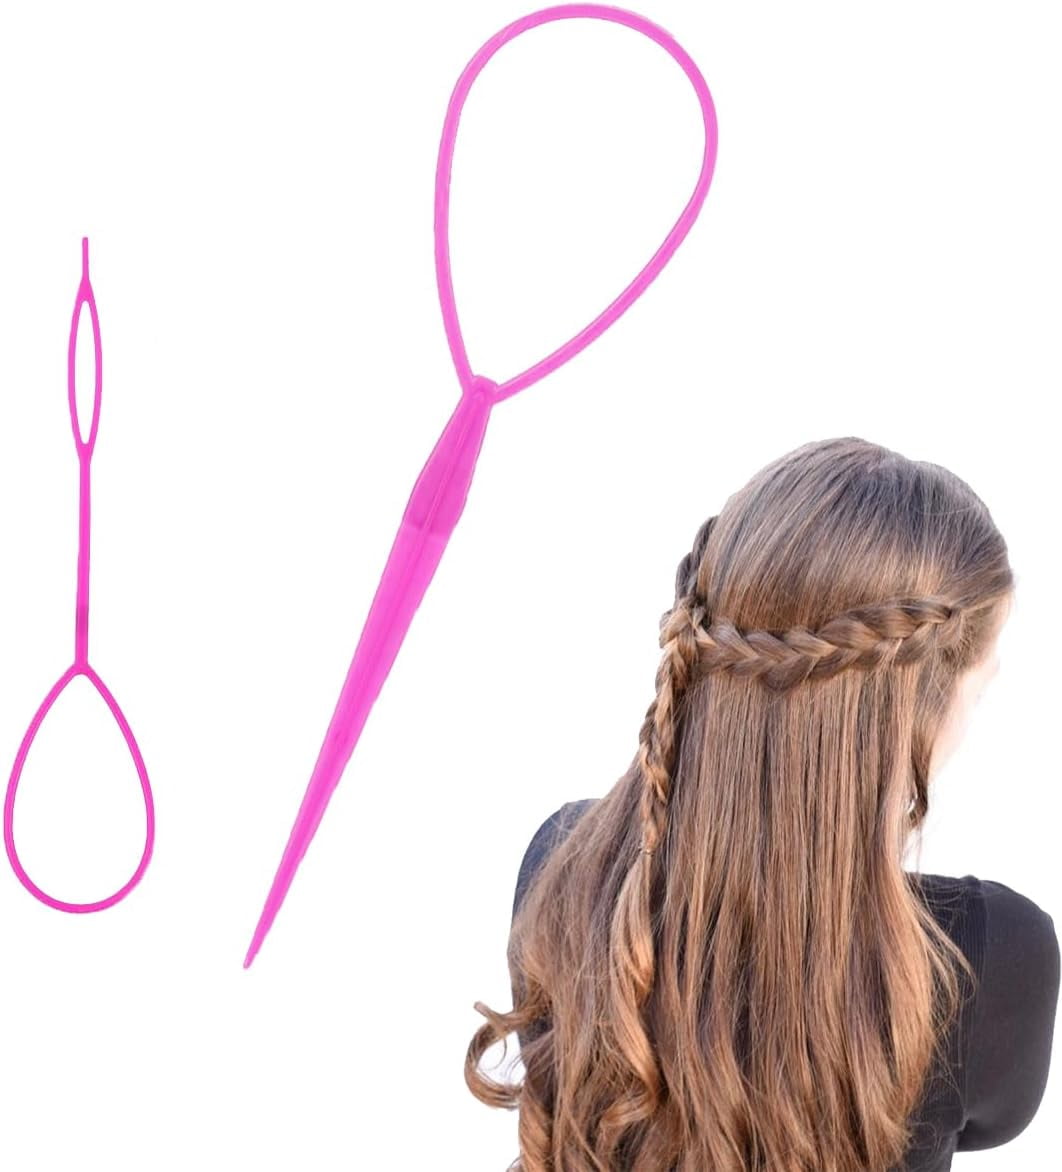 Hair - Hair Weaving Tools - Tools & Thread - Annie International